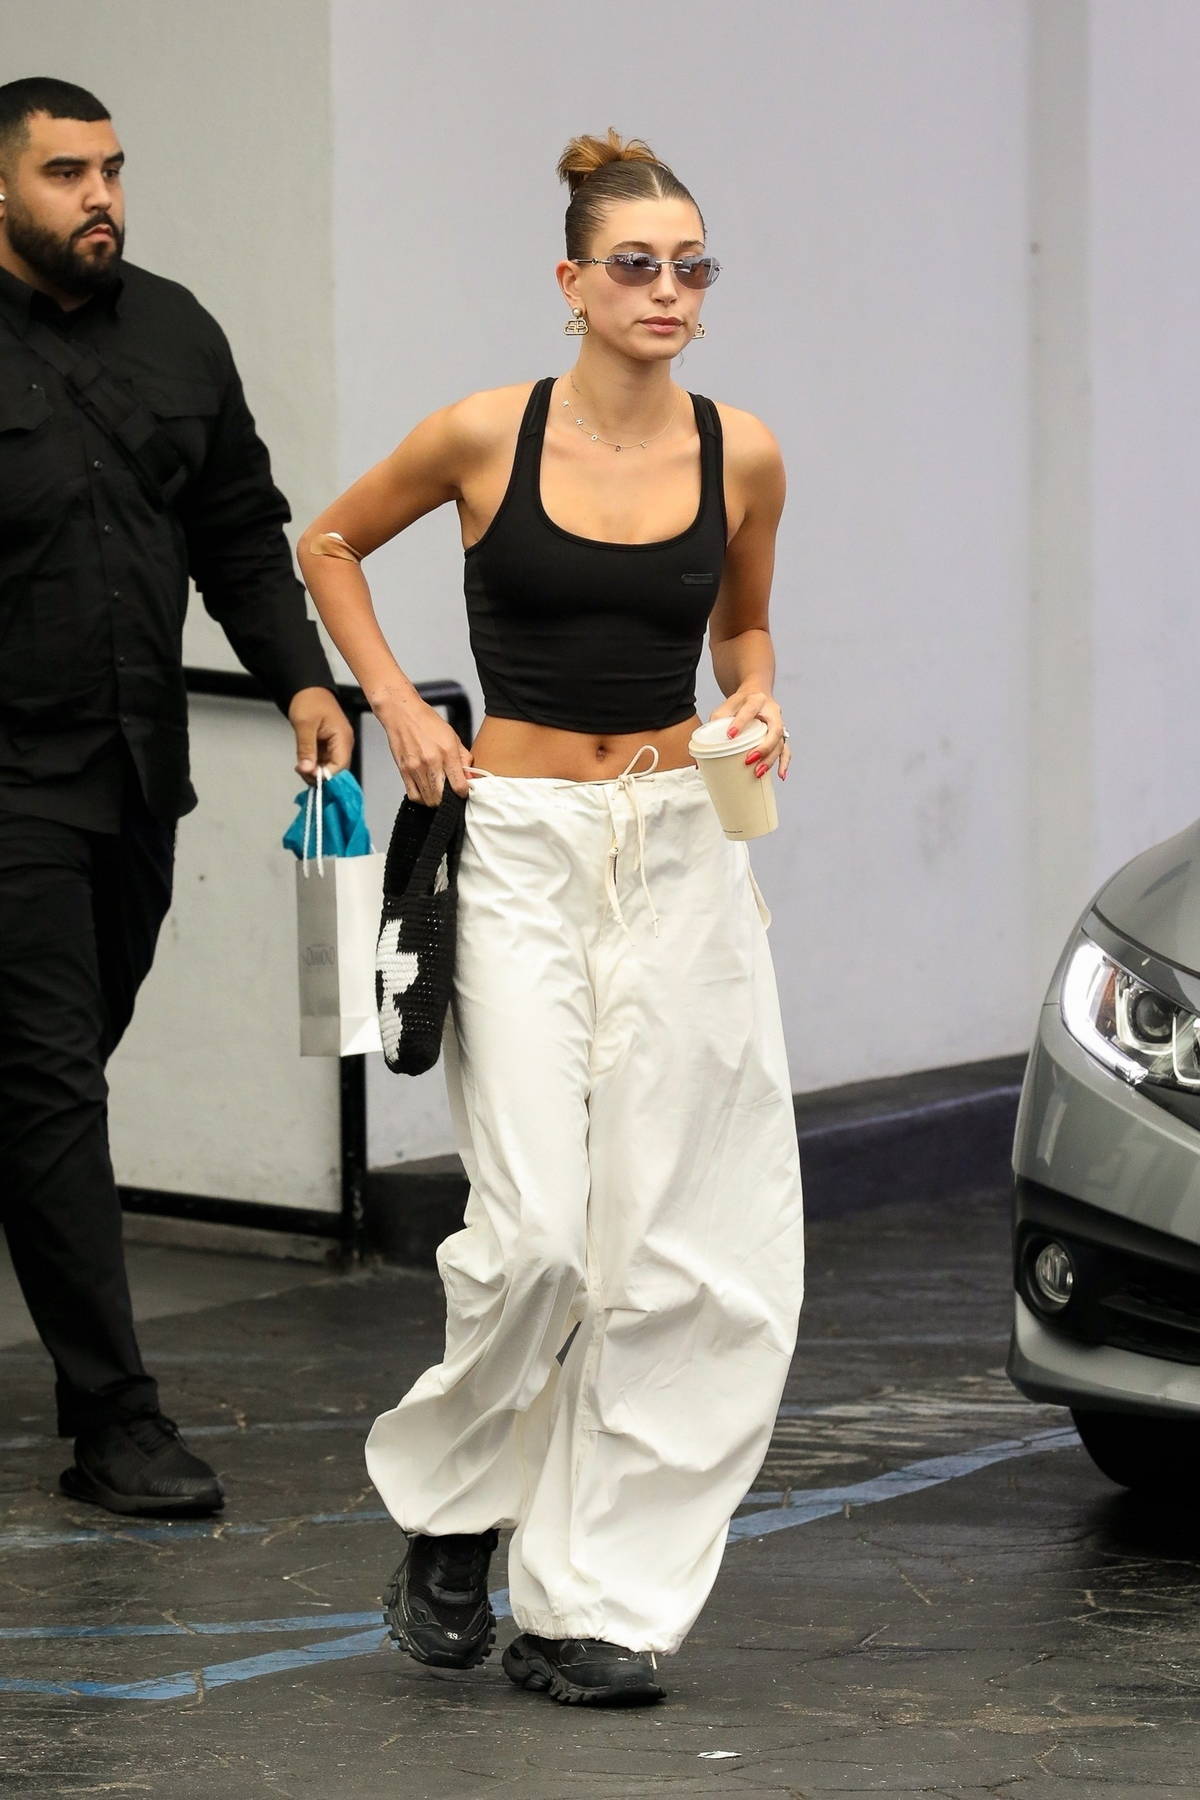 Hailey Bieber displays her svelte figure in crop top and baggy pants ...